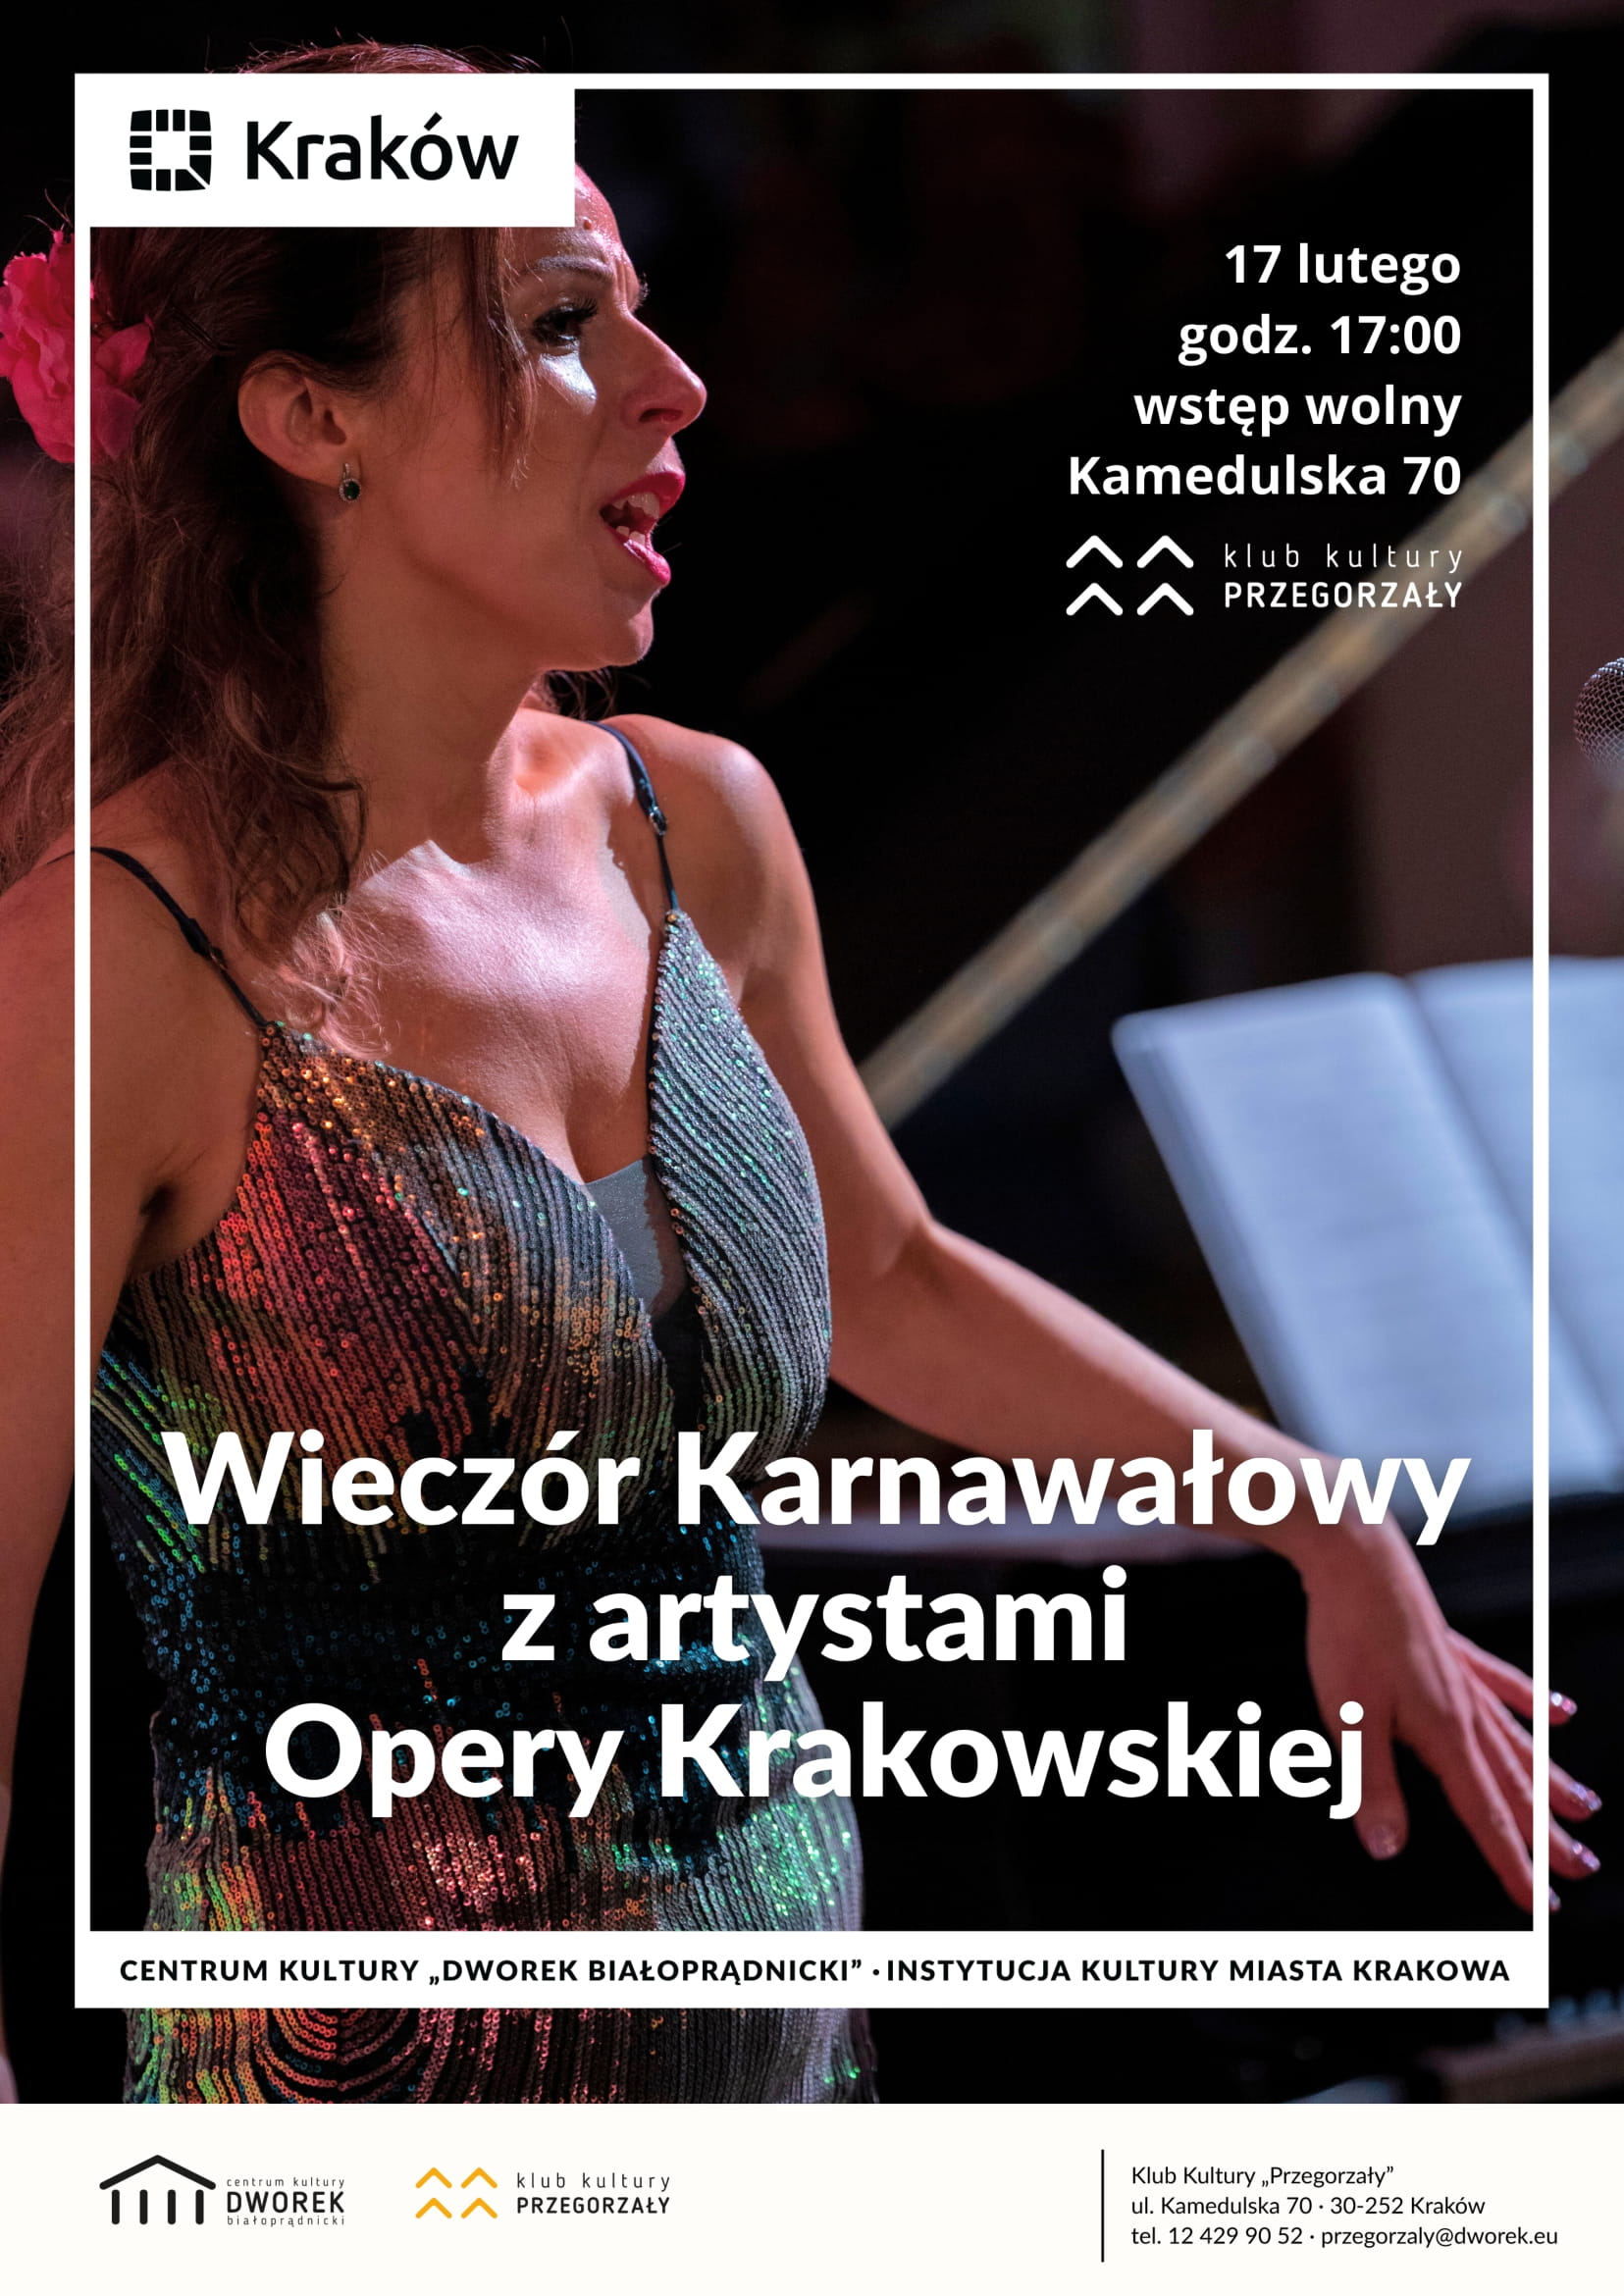 wieczor karnawalowy z arystami opery krakowskiej 1 - Wieczór karnawałowy z artystami Opery Krakowskiej